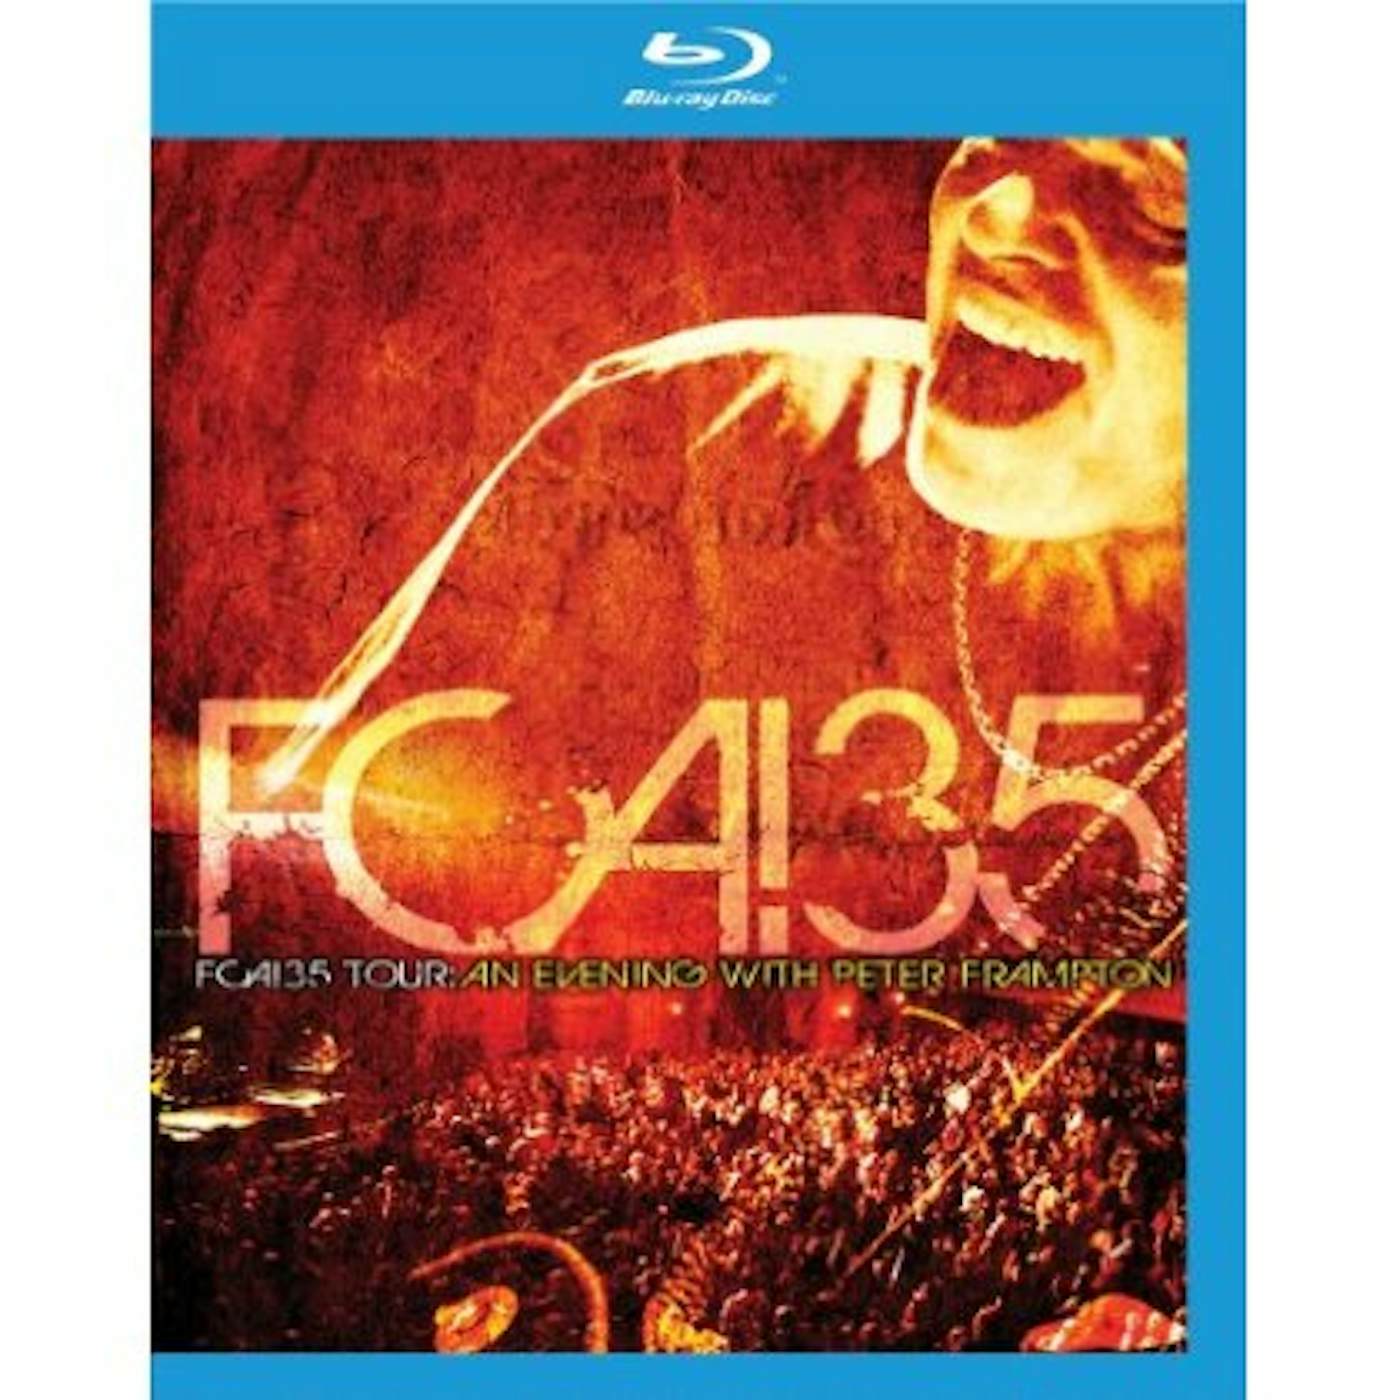 FCA 35 TOUR: AN EVENING WITH PETER FRAMPTON Blu-ray